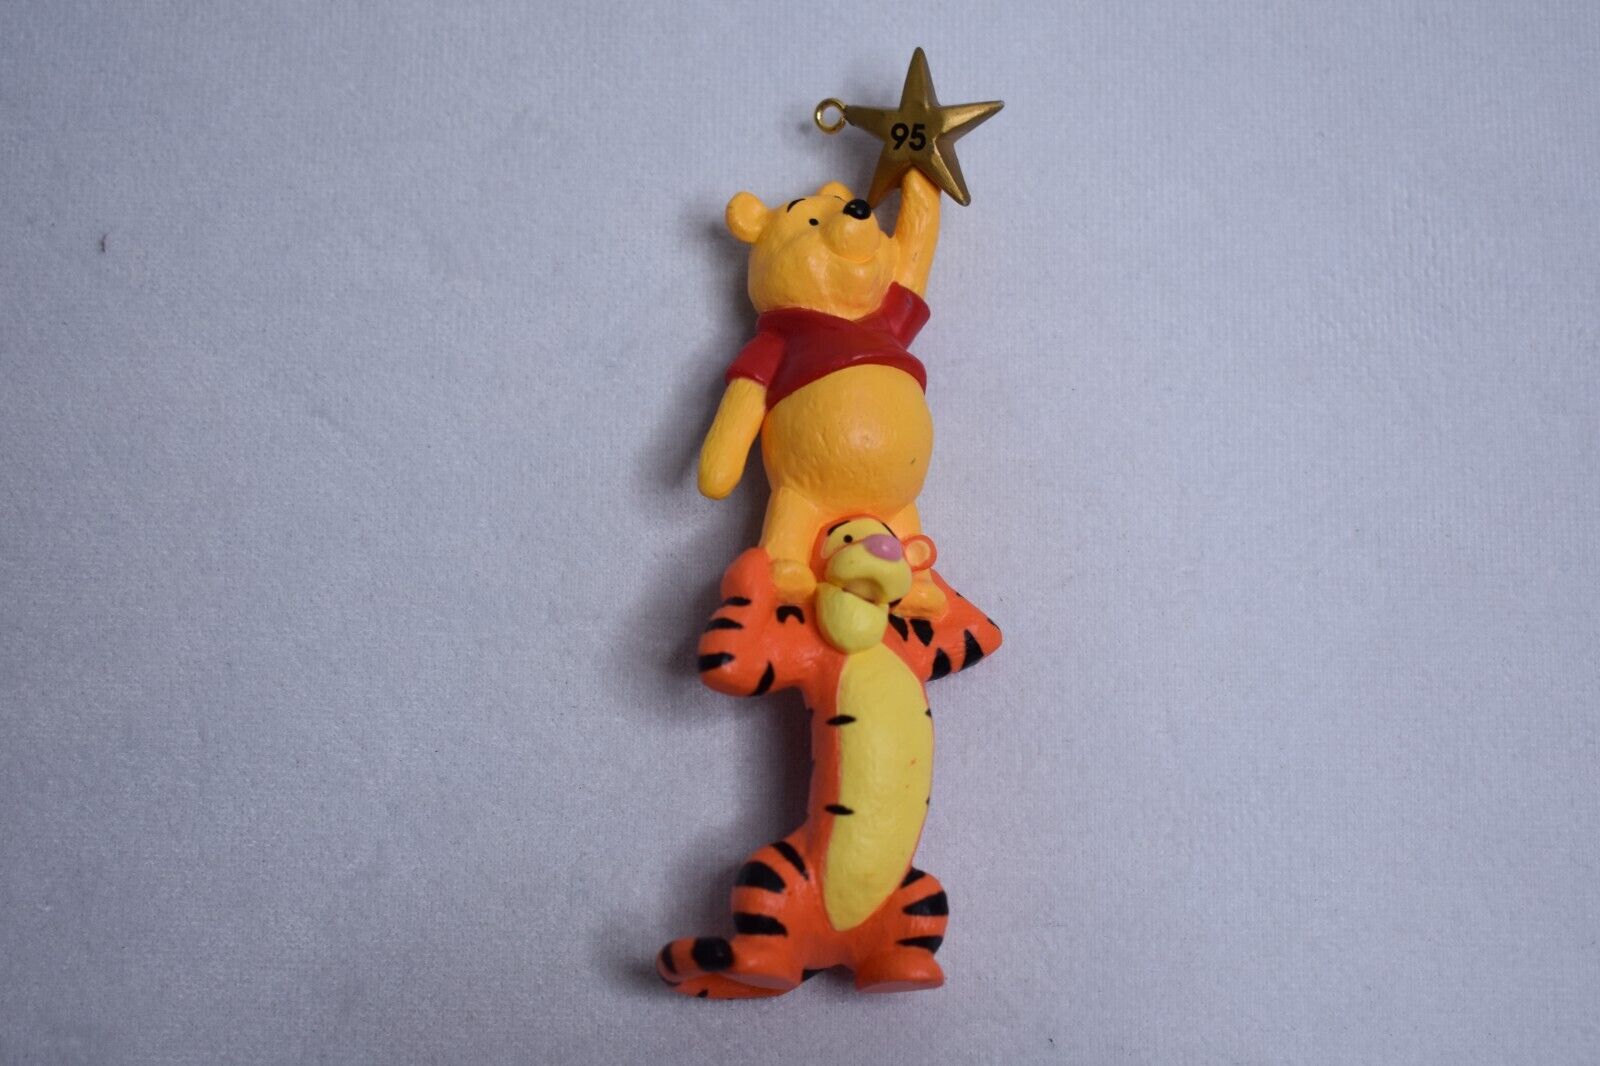 1995 Hallmark Keepsake Christmas Tree Ornament Winnie the Pooh and Tigger